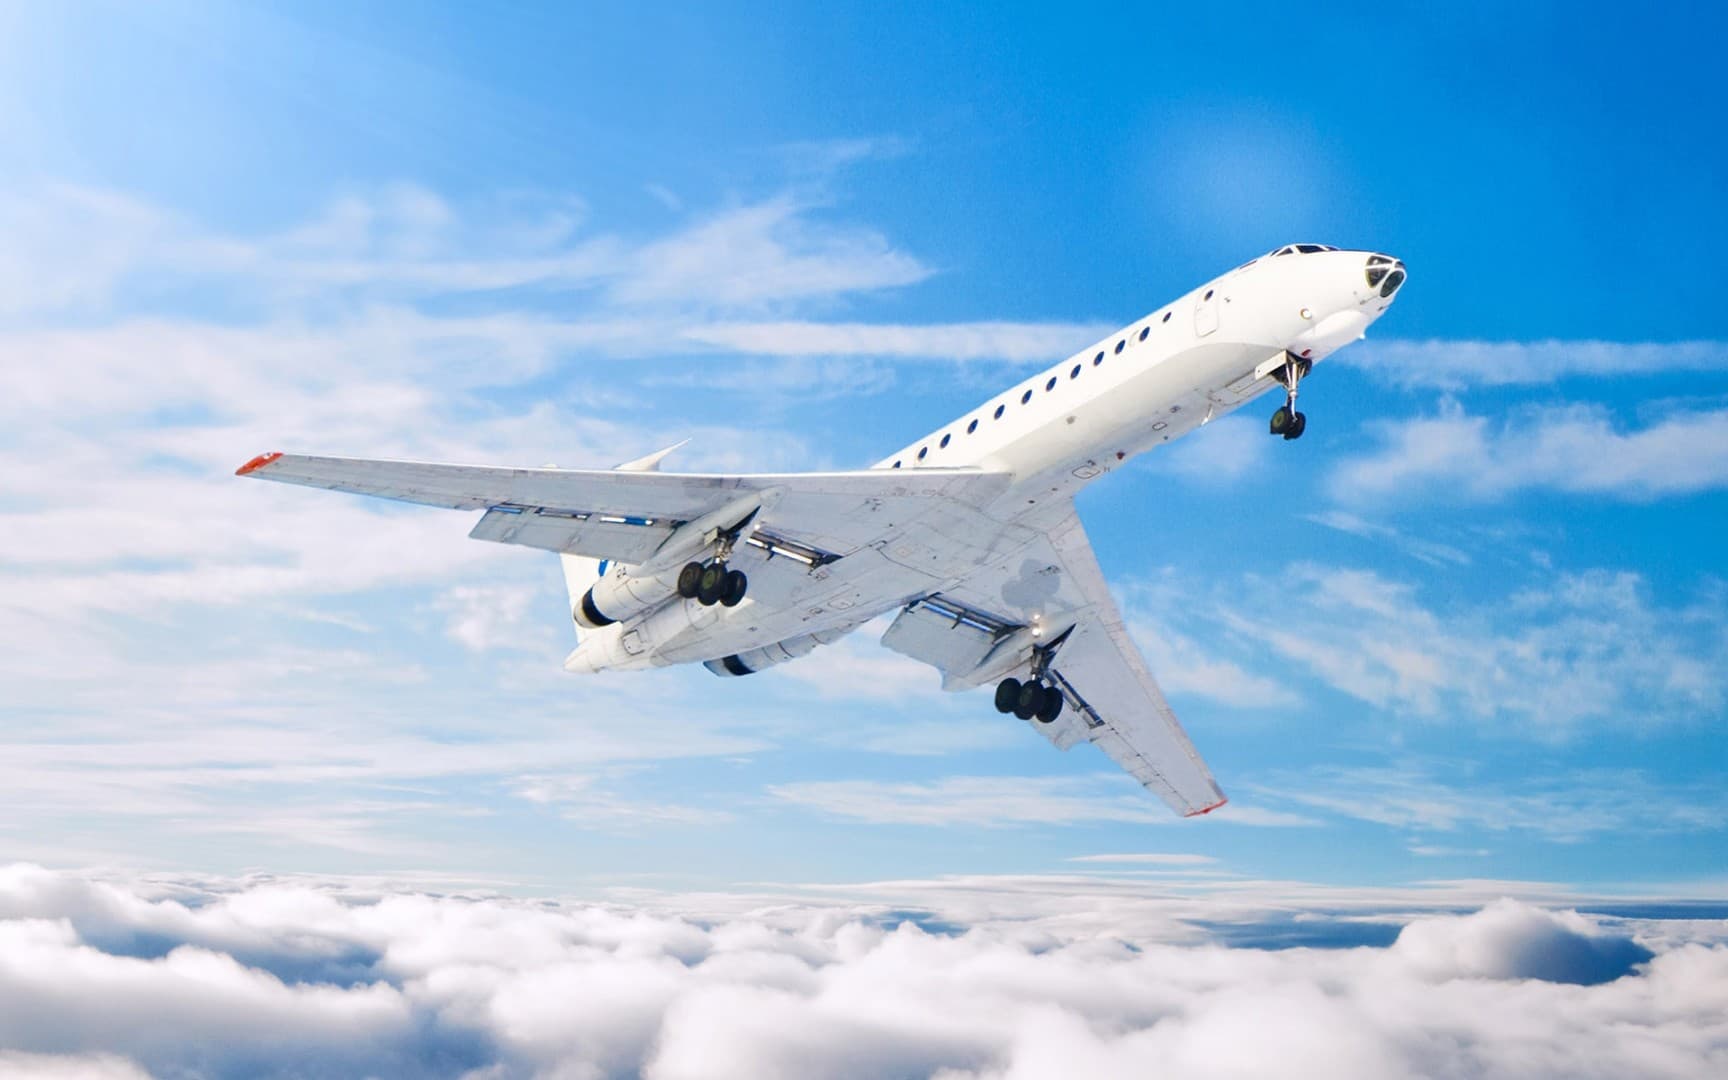 Washington és London megtiltotta, hogy az utasok nagyobb elektronikai eszközöket vigyenek fel a repülőgépekre